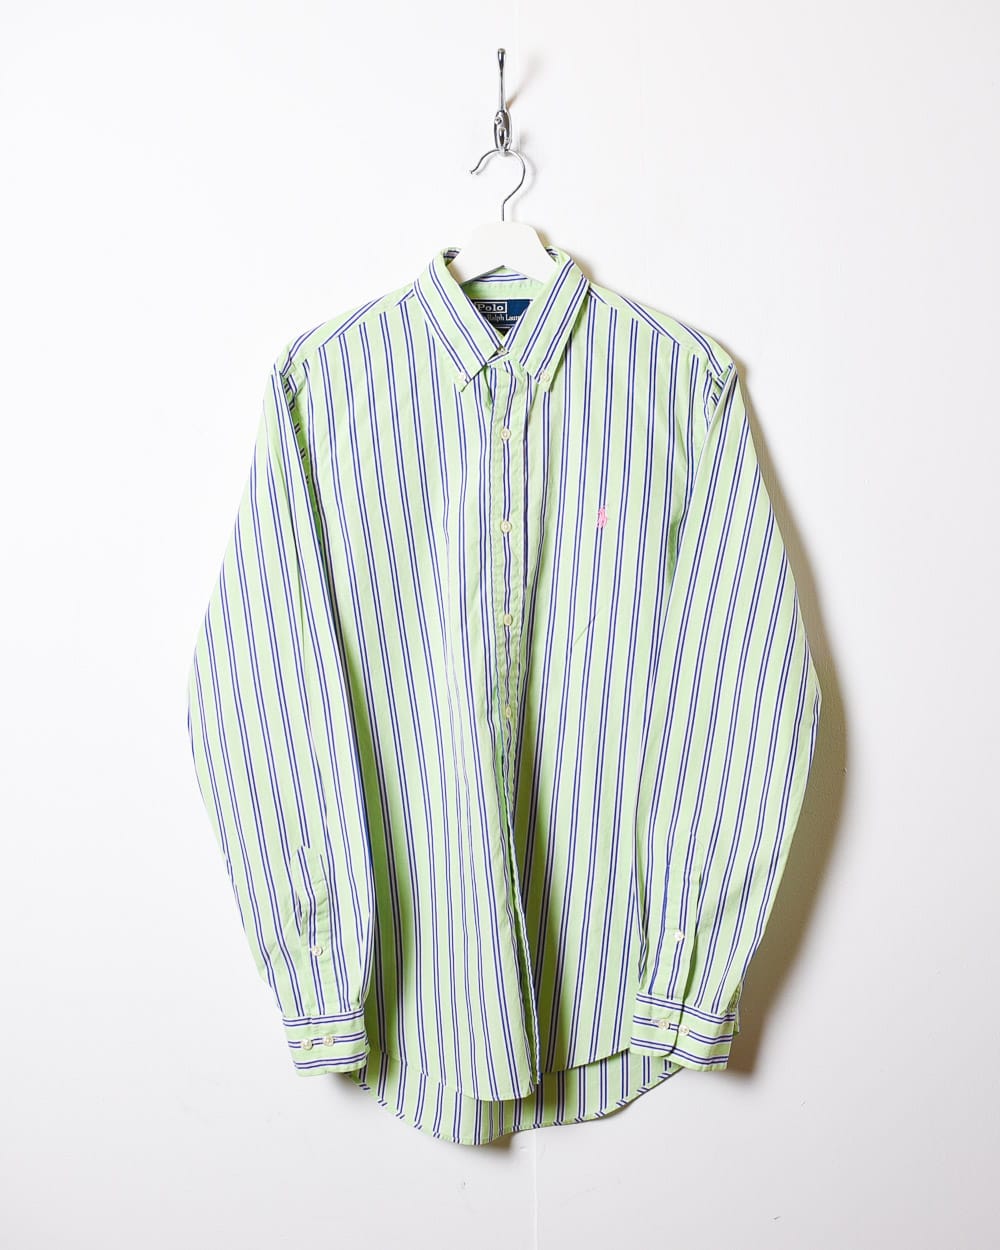 Green Polo Ralph Lauren Striped Shirt - Small